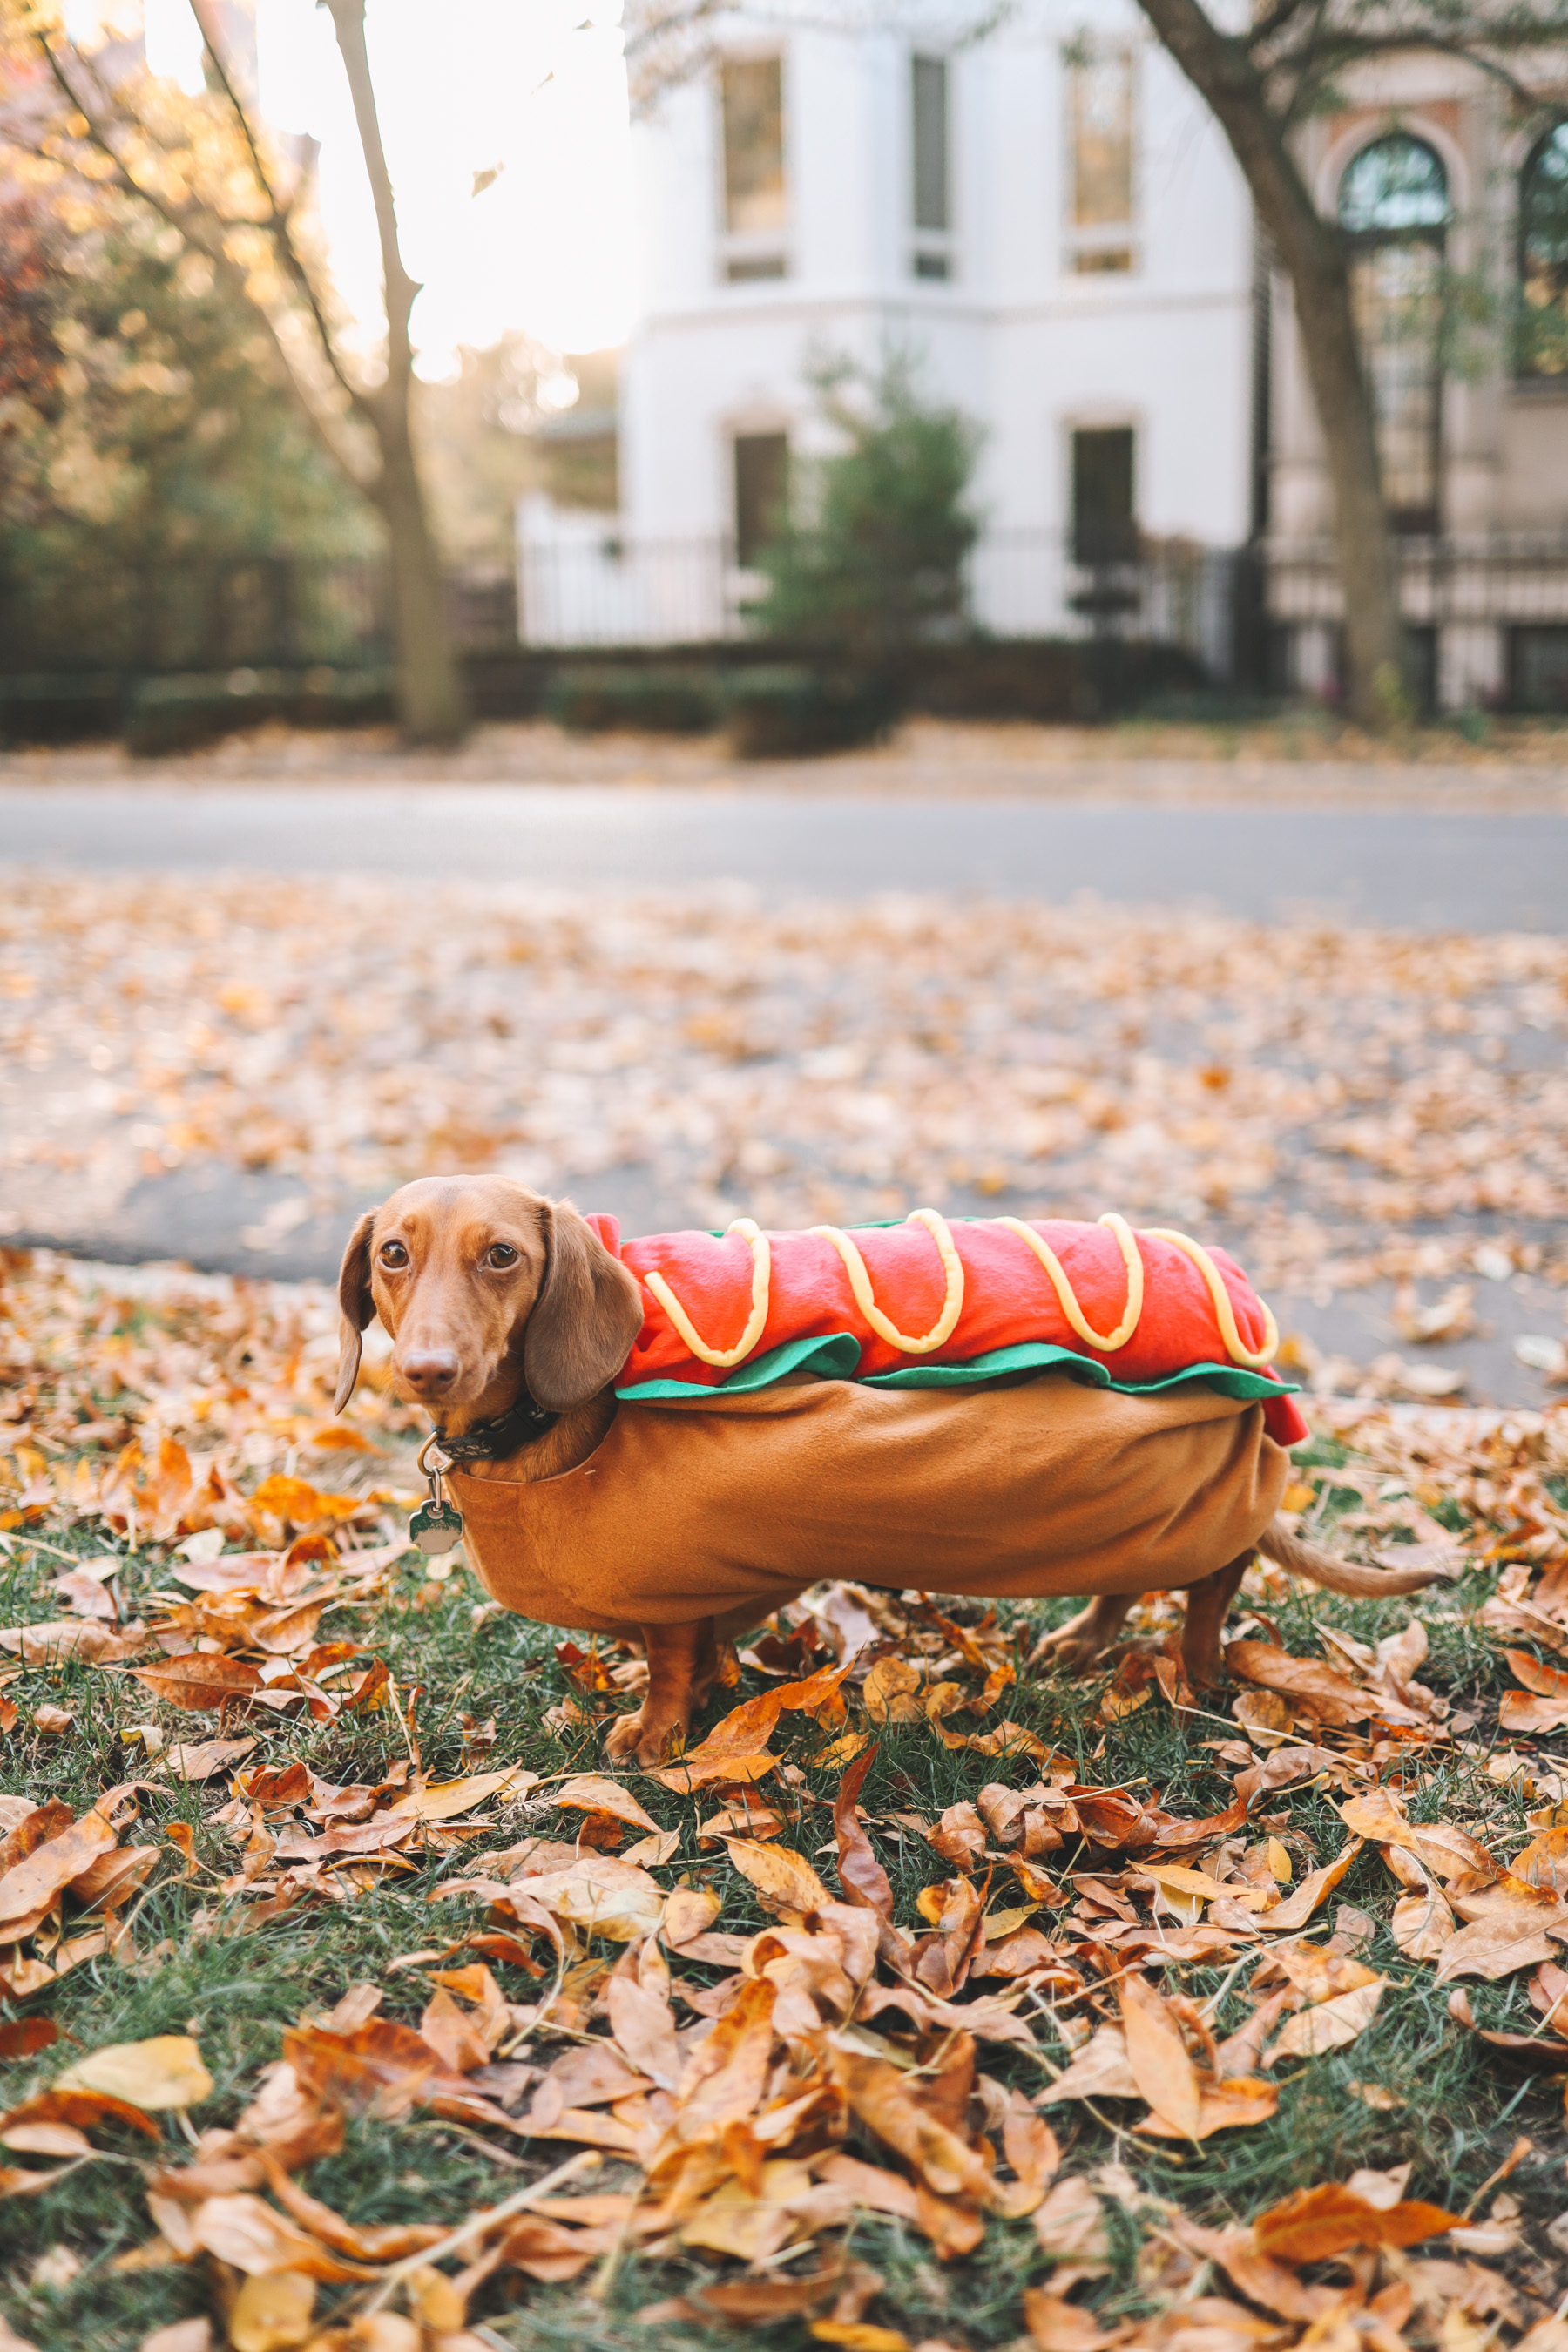 noodle's hotdog costume